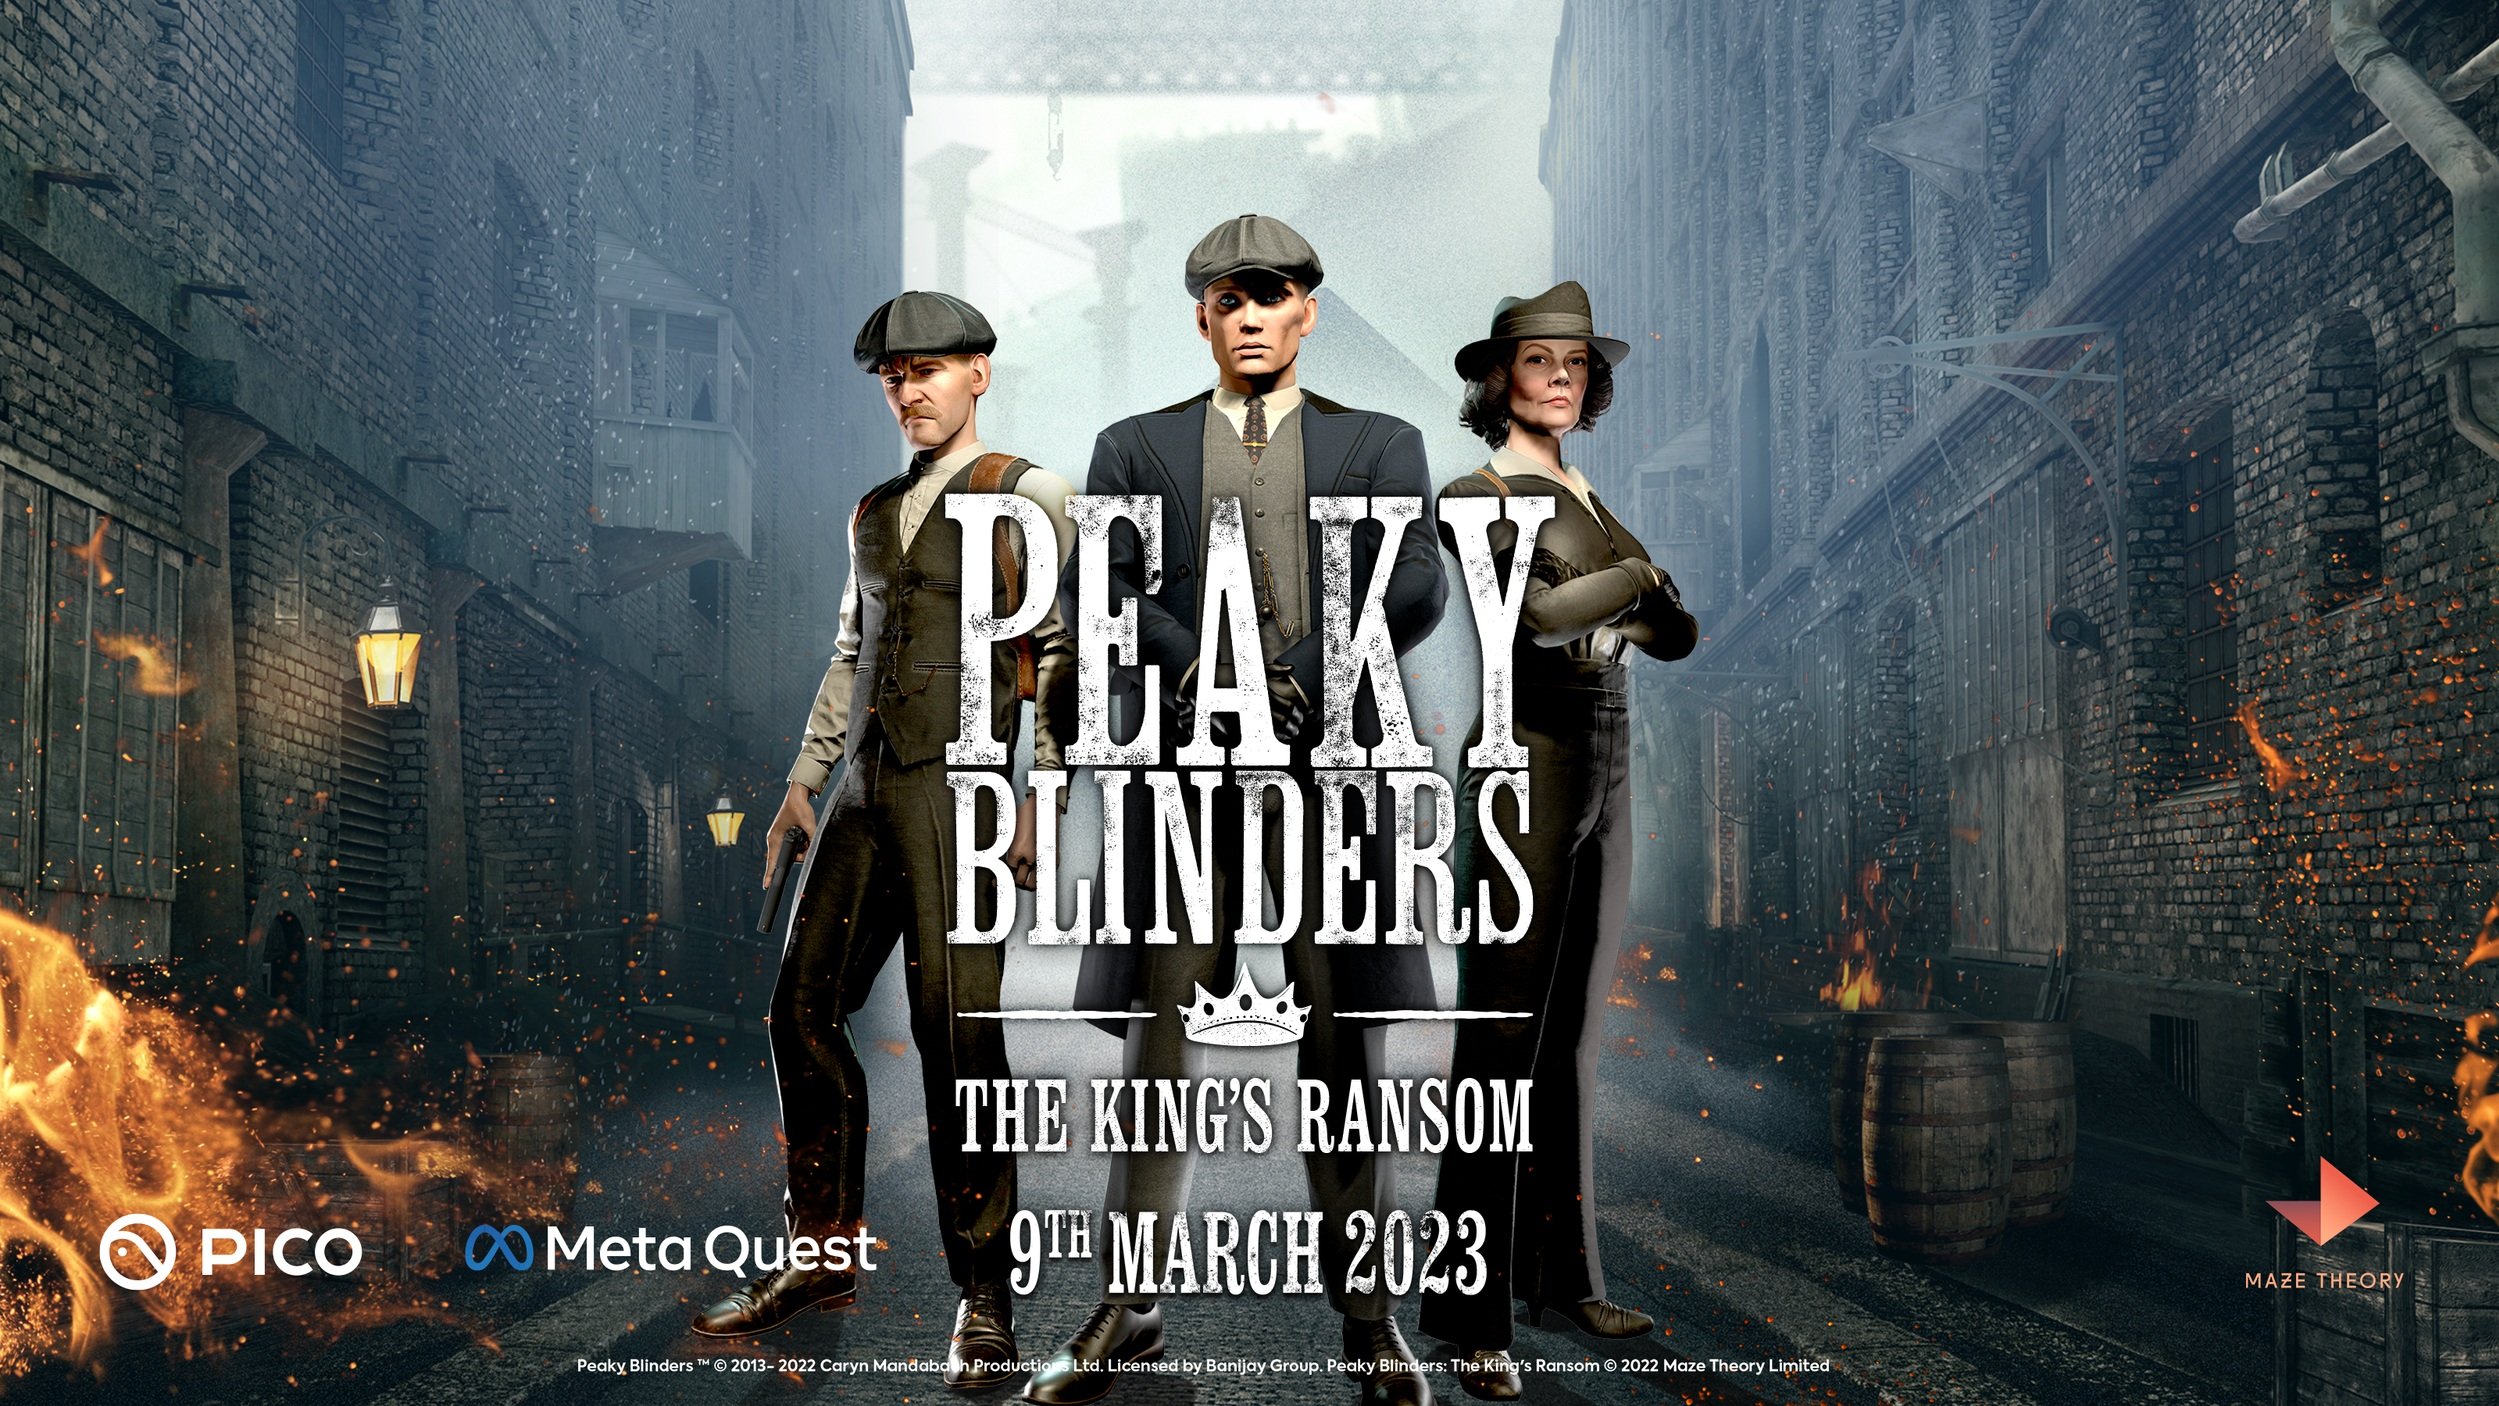 Peaky Blinders (TV Series 2013–2022) - IMDb